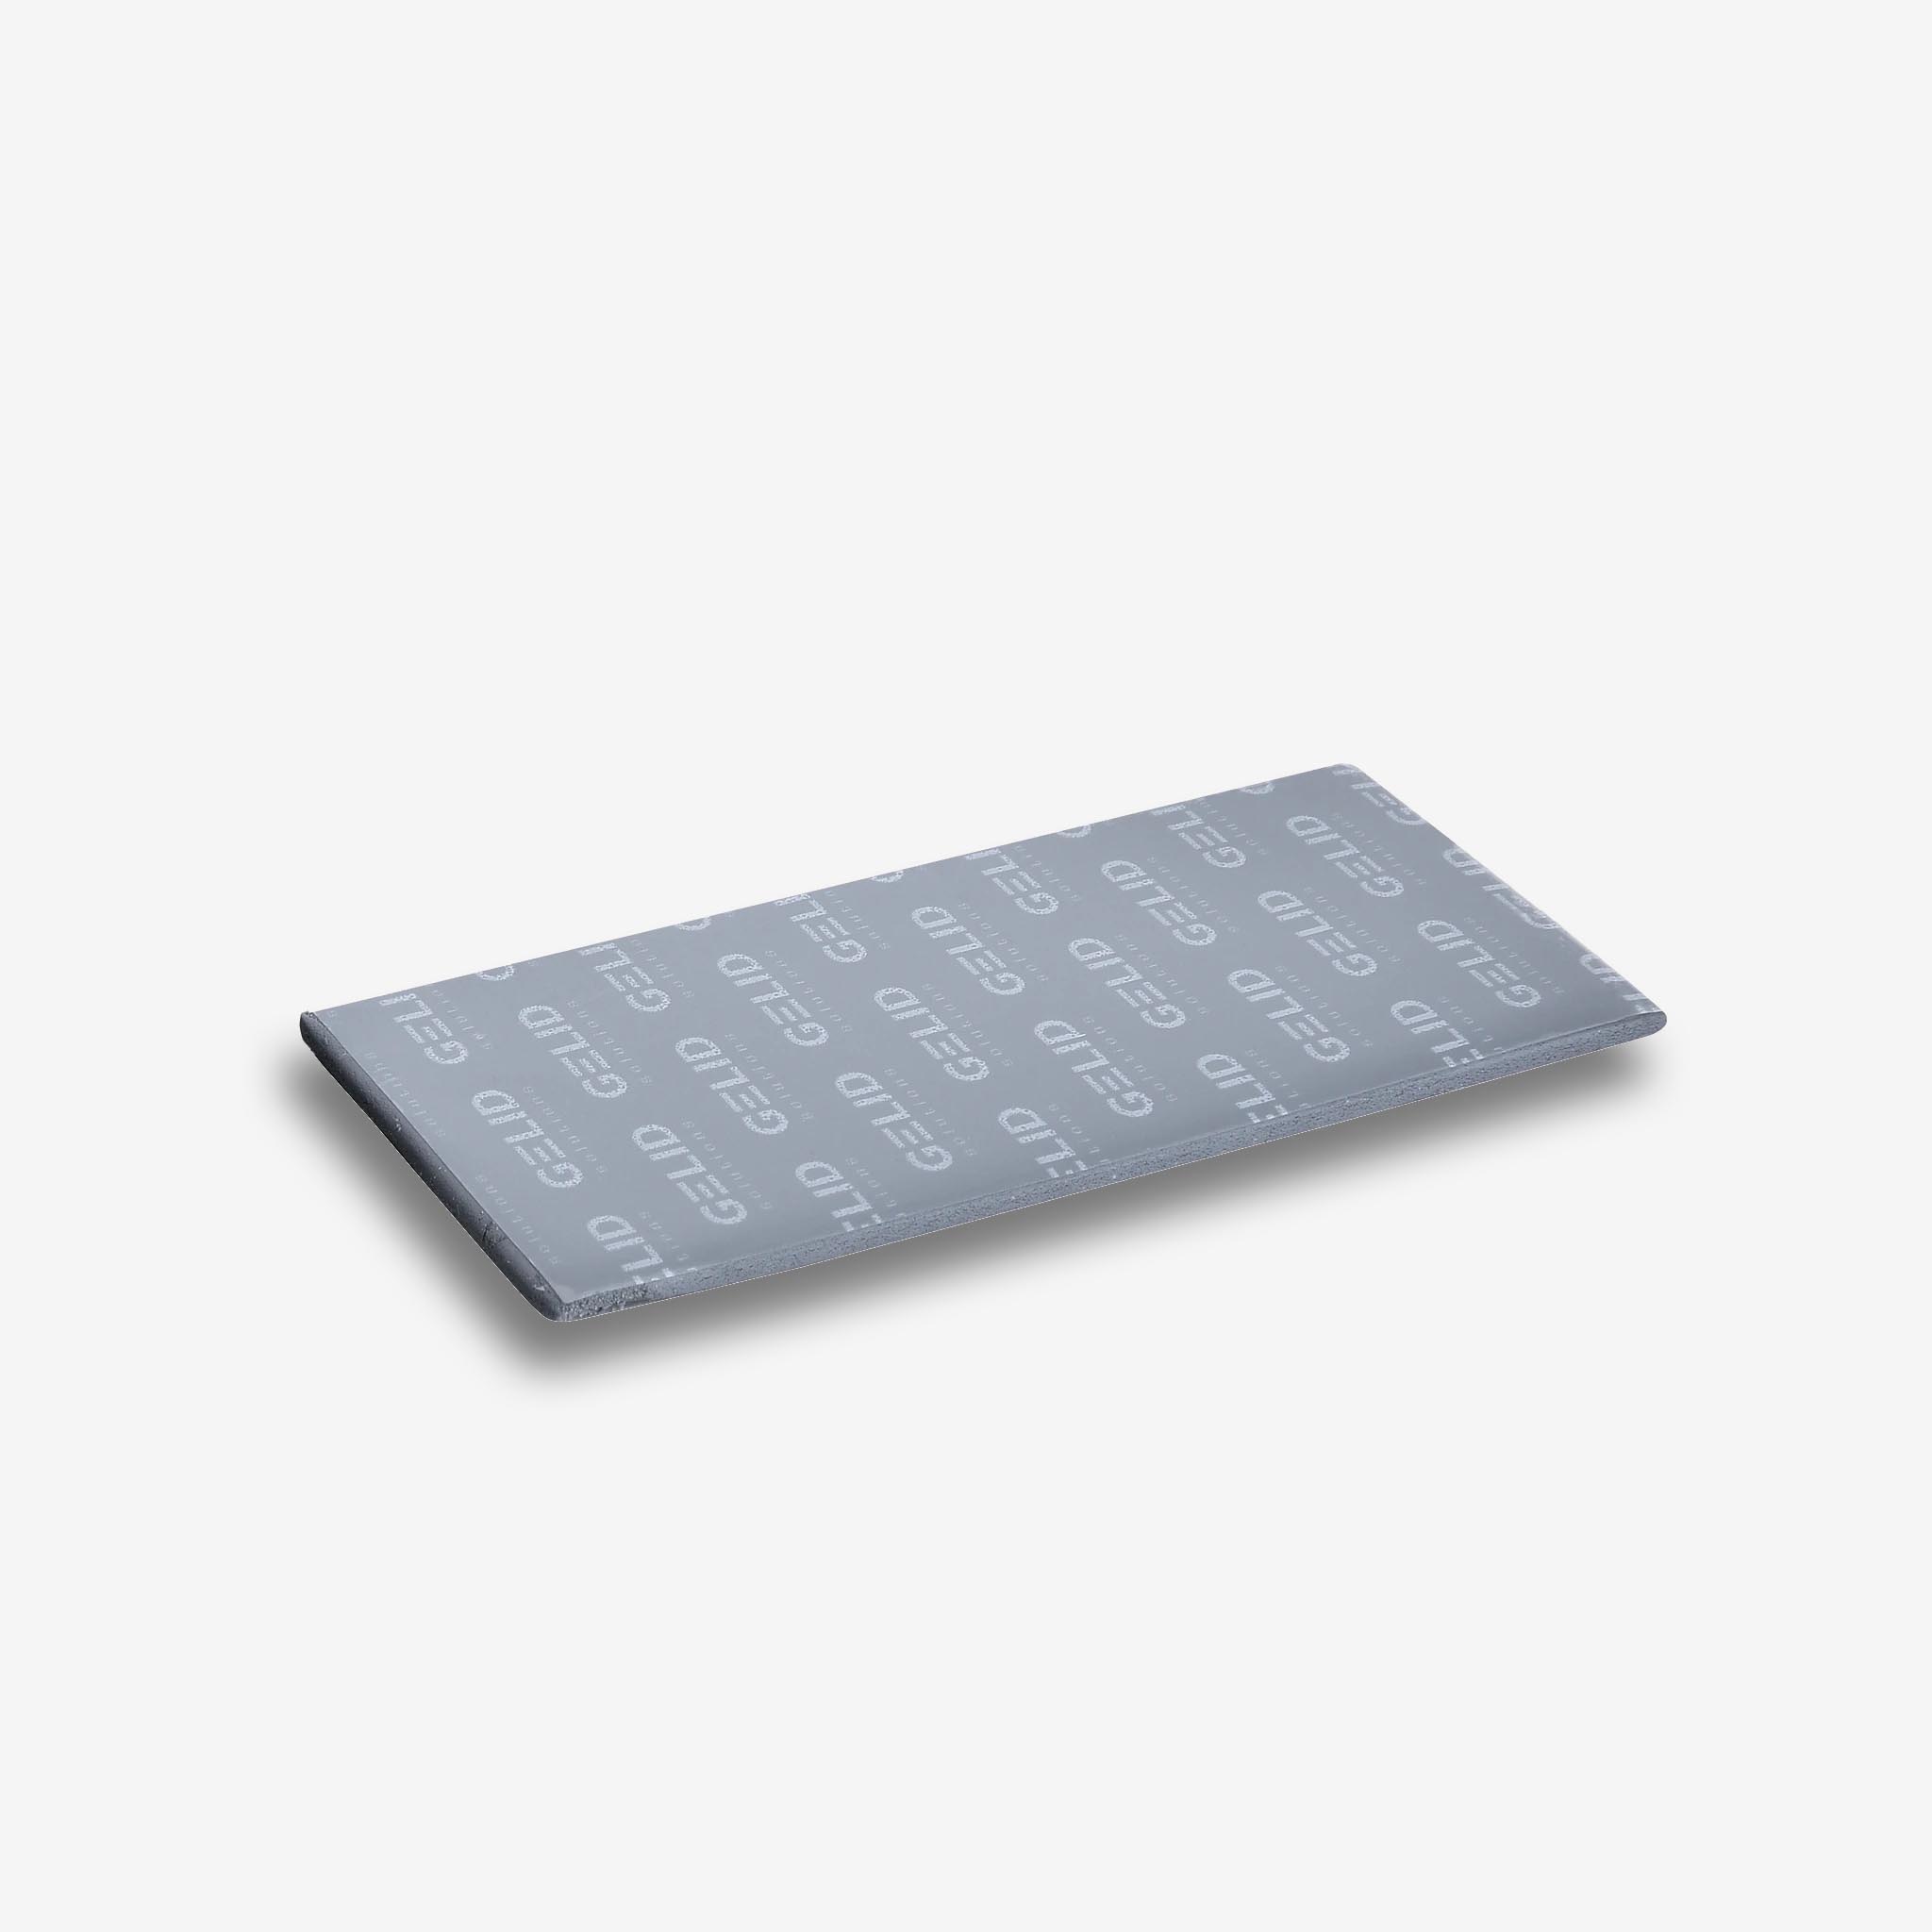 Thermal pads